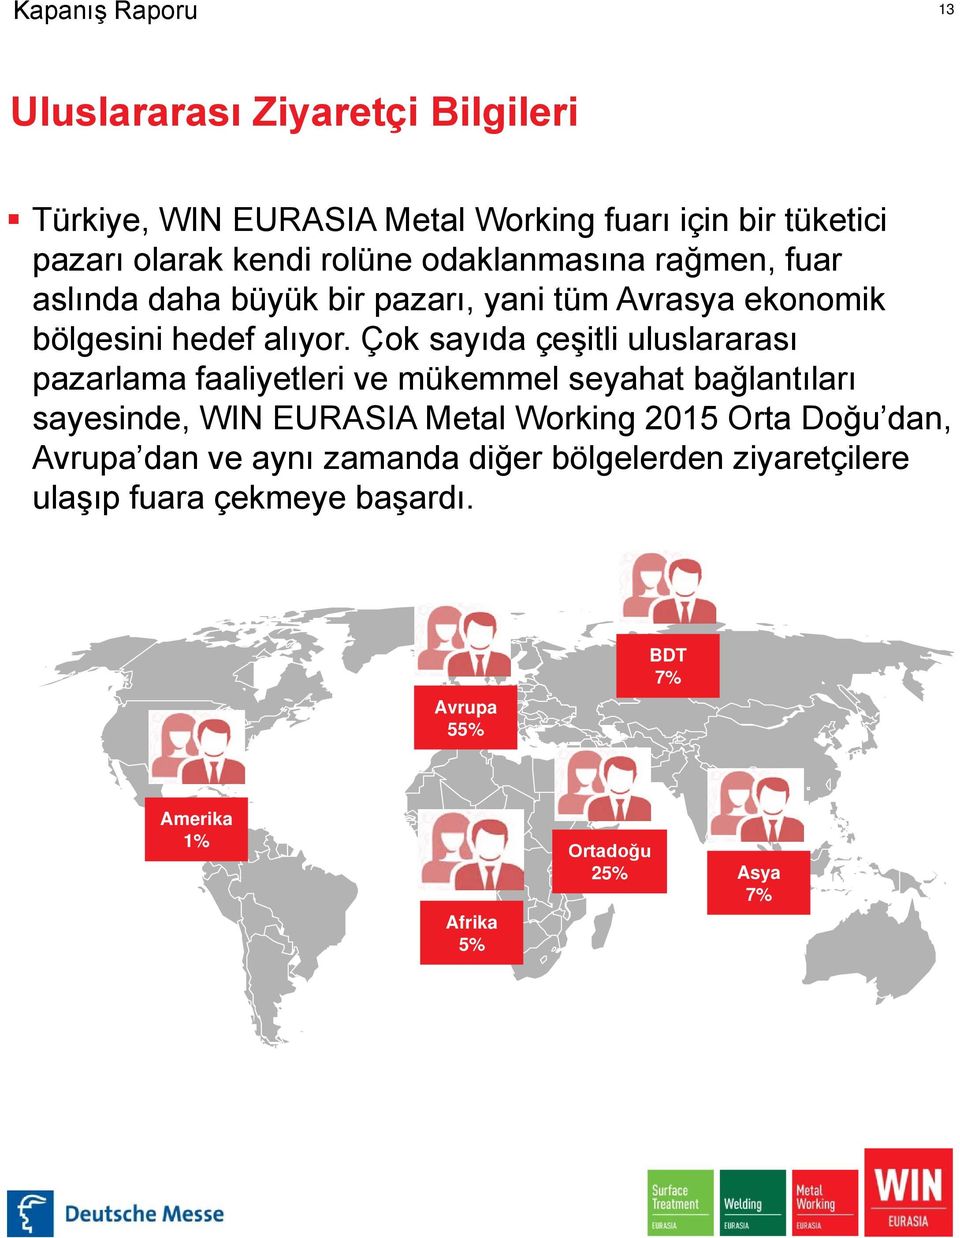 Çok sayıda çeşitli uluslararası pazarlama faaliyetleri ve mükemmel seyahat bağlantıları sayesinde, WIN EURASIA Metal Working 2015